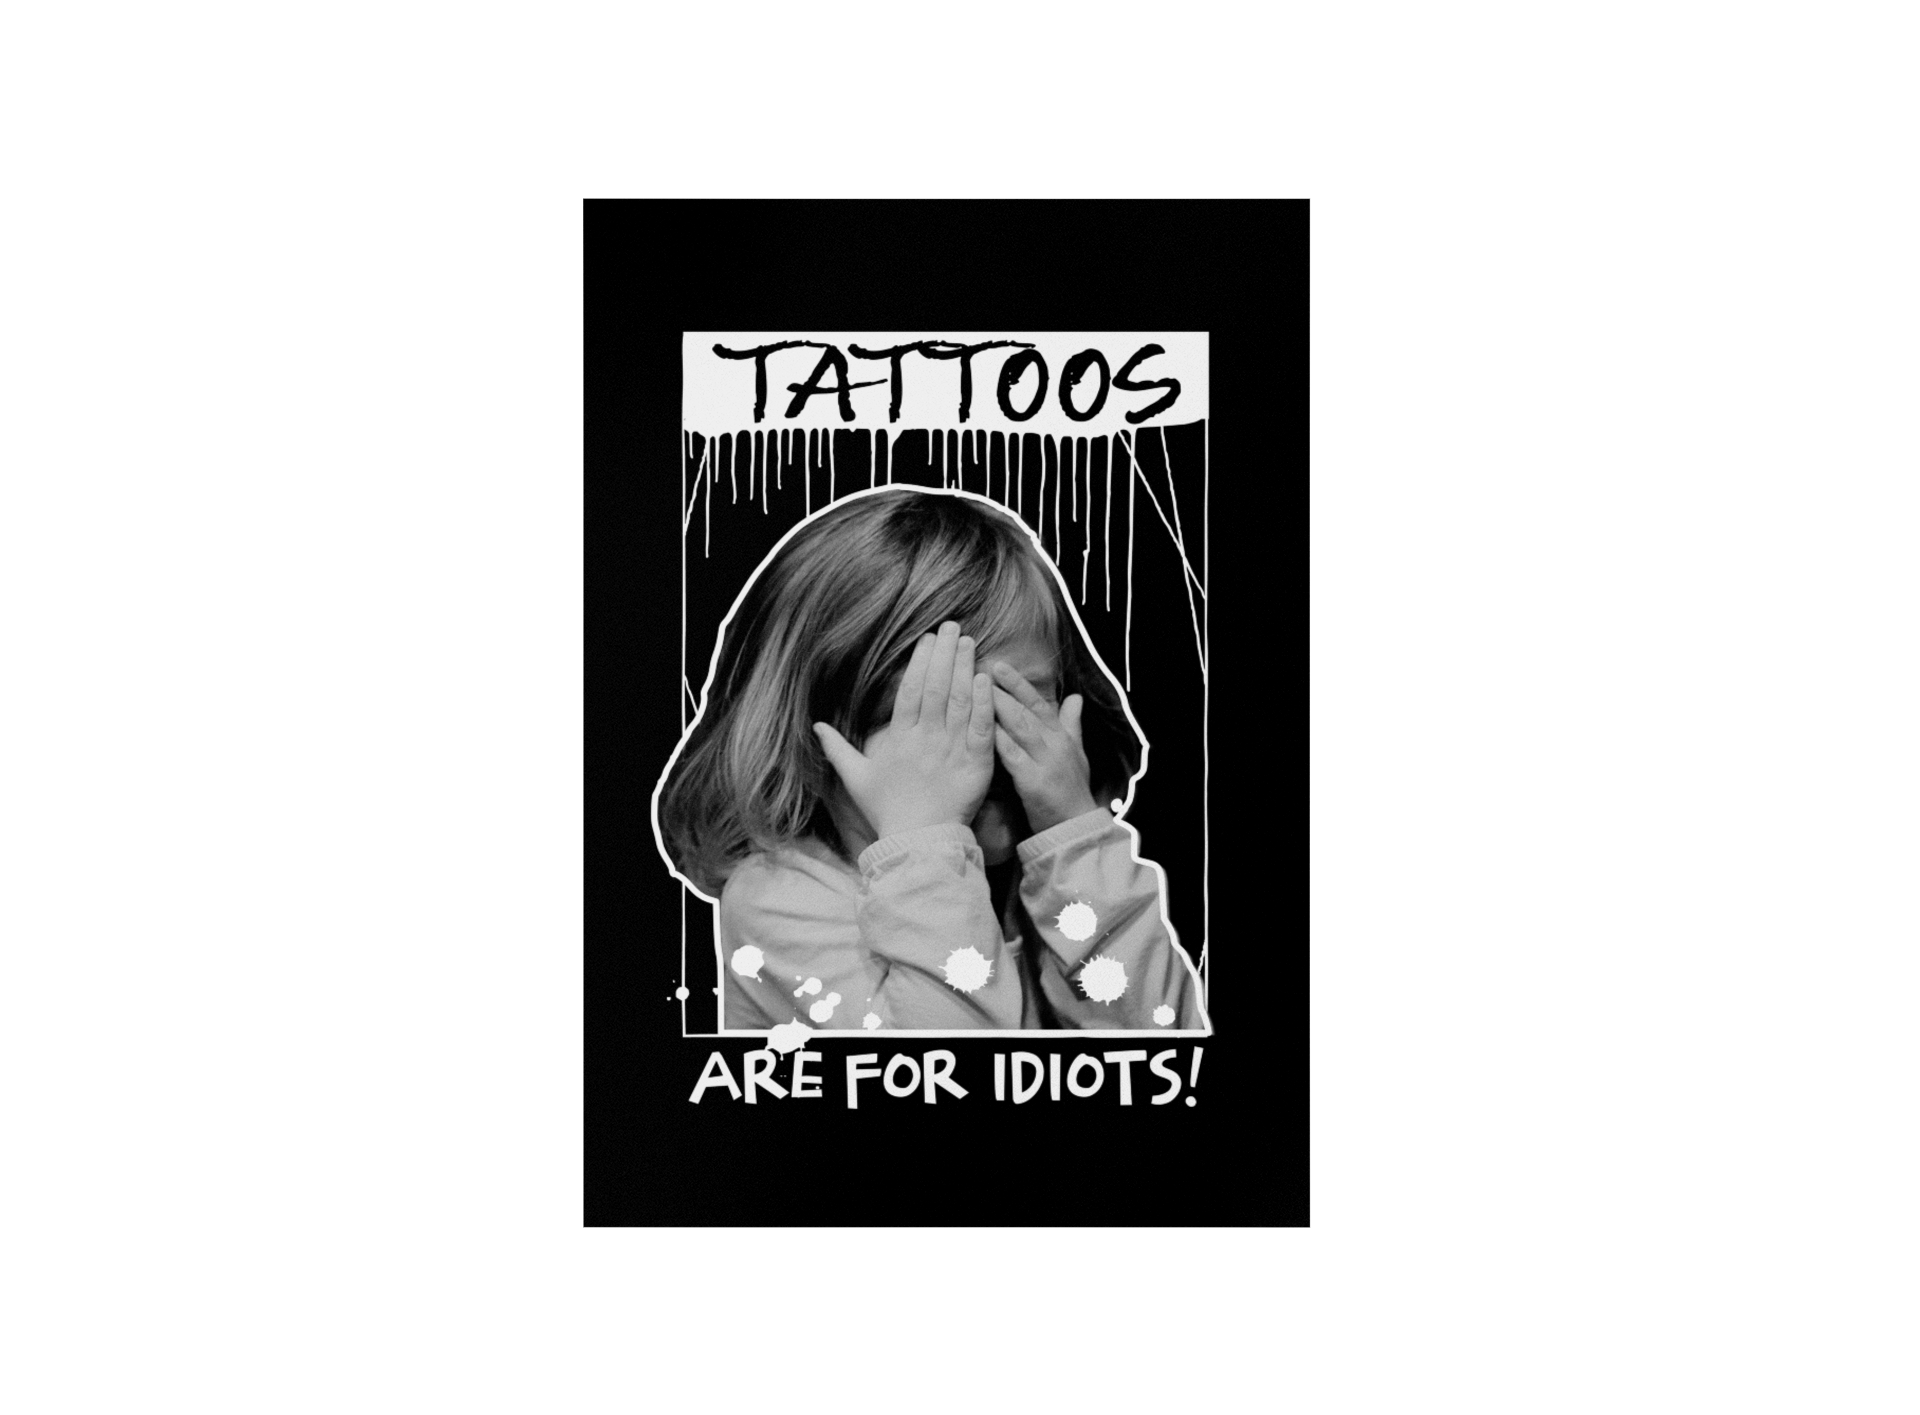 Idiots - Poster Poster     Tattoo Fashion von inked-mafia.de. Dieses Teil gehört in jeden Kleiderschrank eines inked-rebels! Finde ideale Geschenke für Tätowierte, Tattoofans oder Tätowierer.